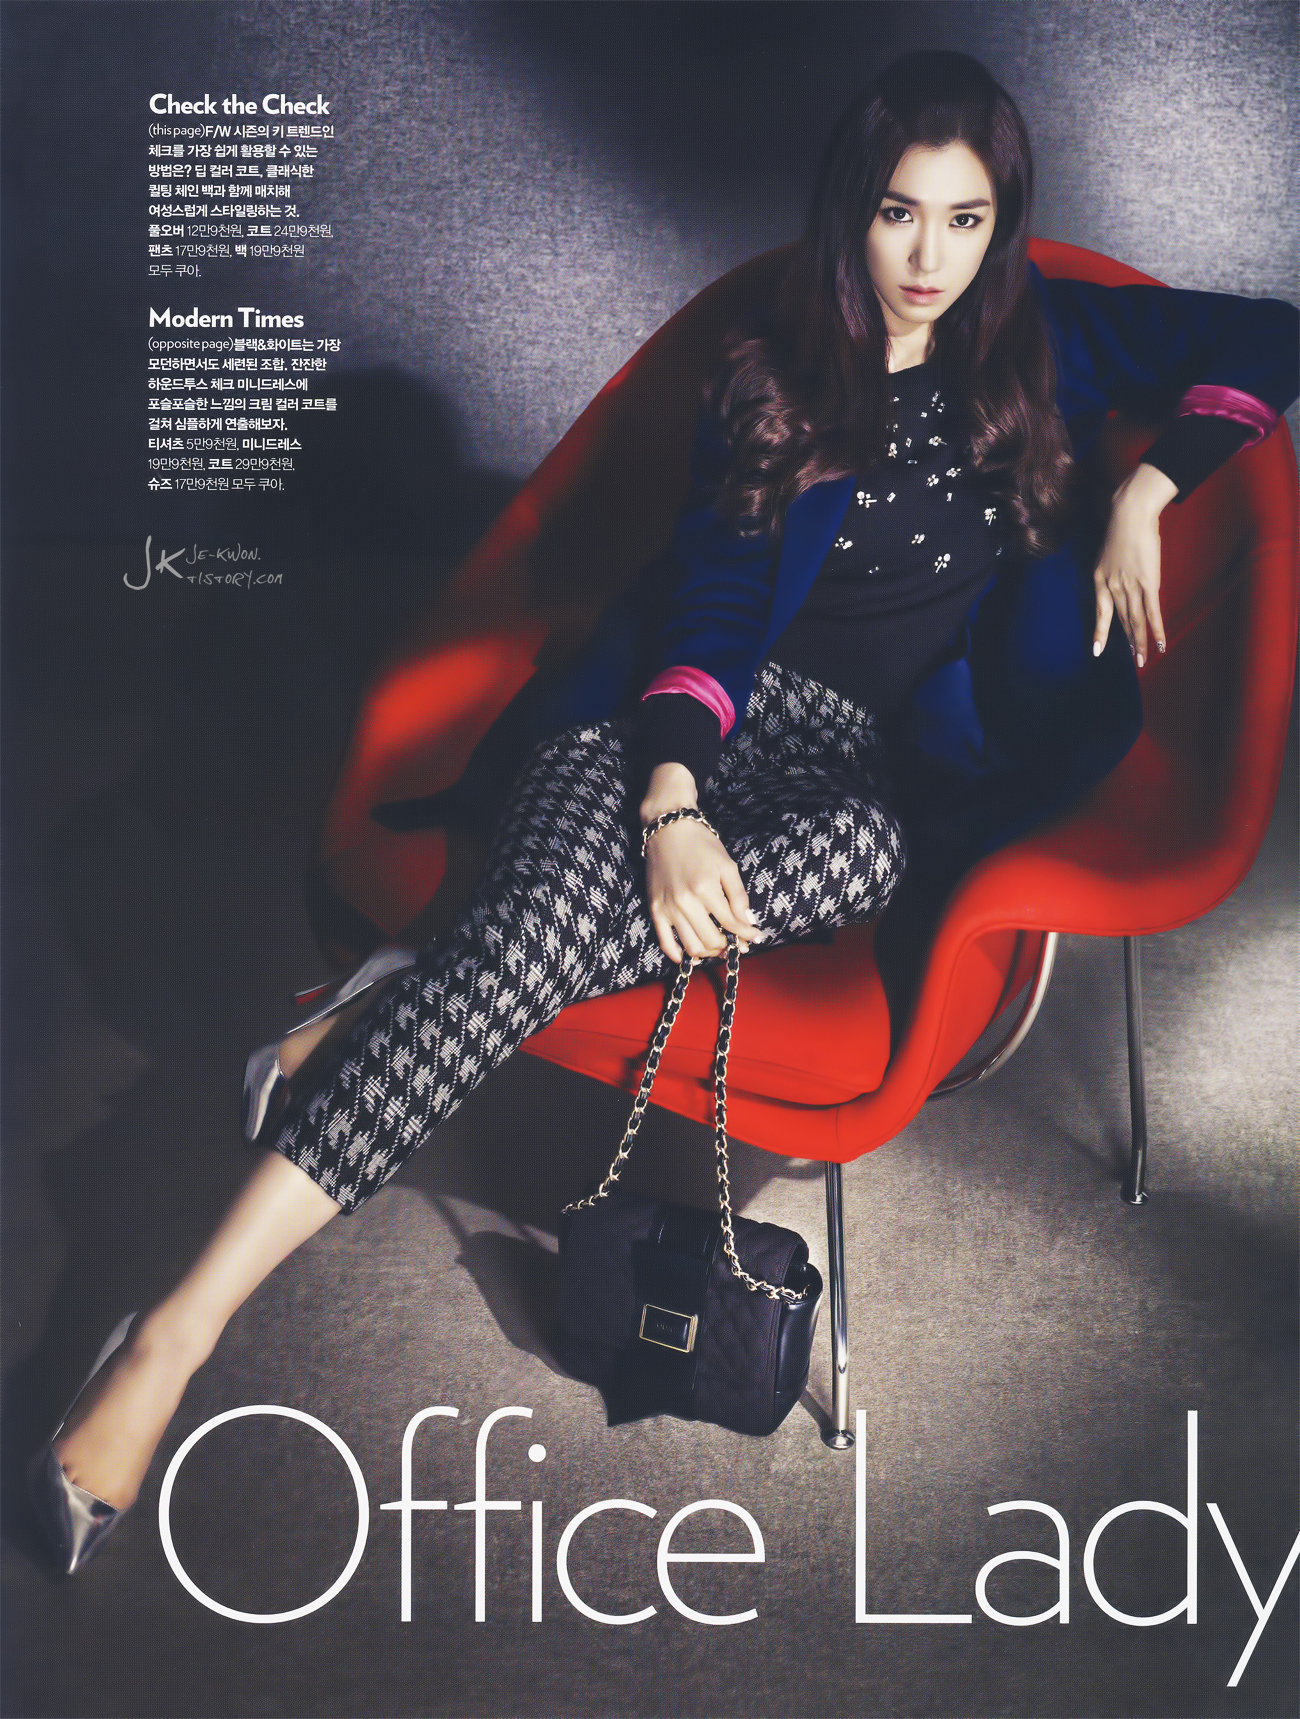 [PIC][20-10-2013]Tiffany xuất hiện trên ấn phẩm tháng 11 của tạp chí "Cosmopolitan" 2239D63A5264E2CA188A08